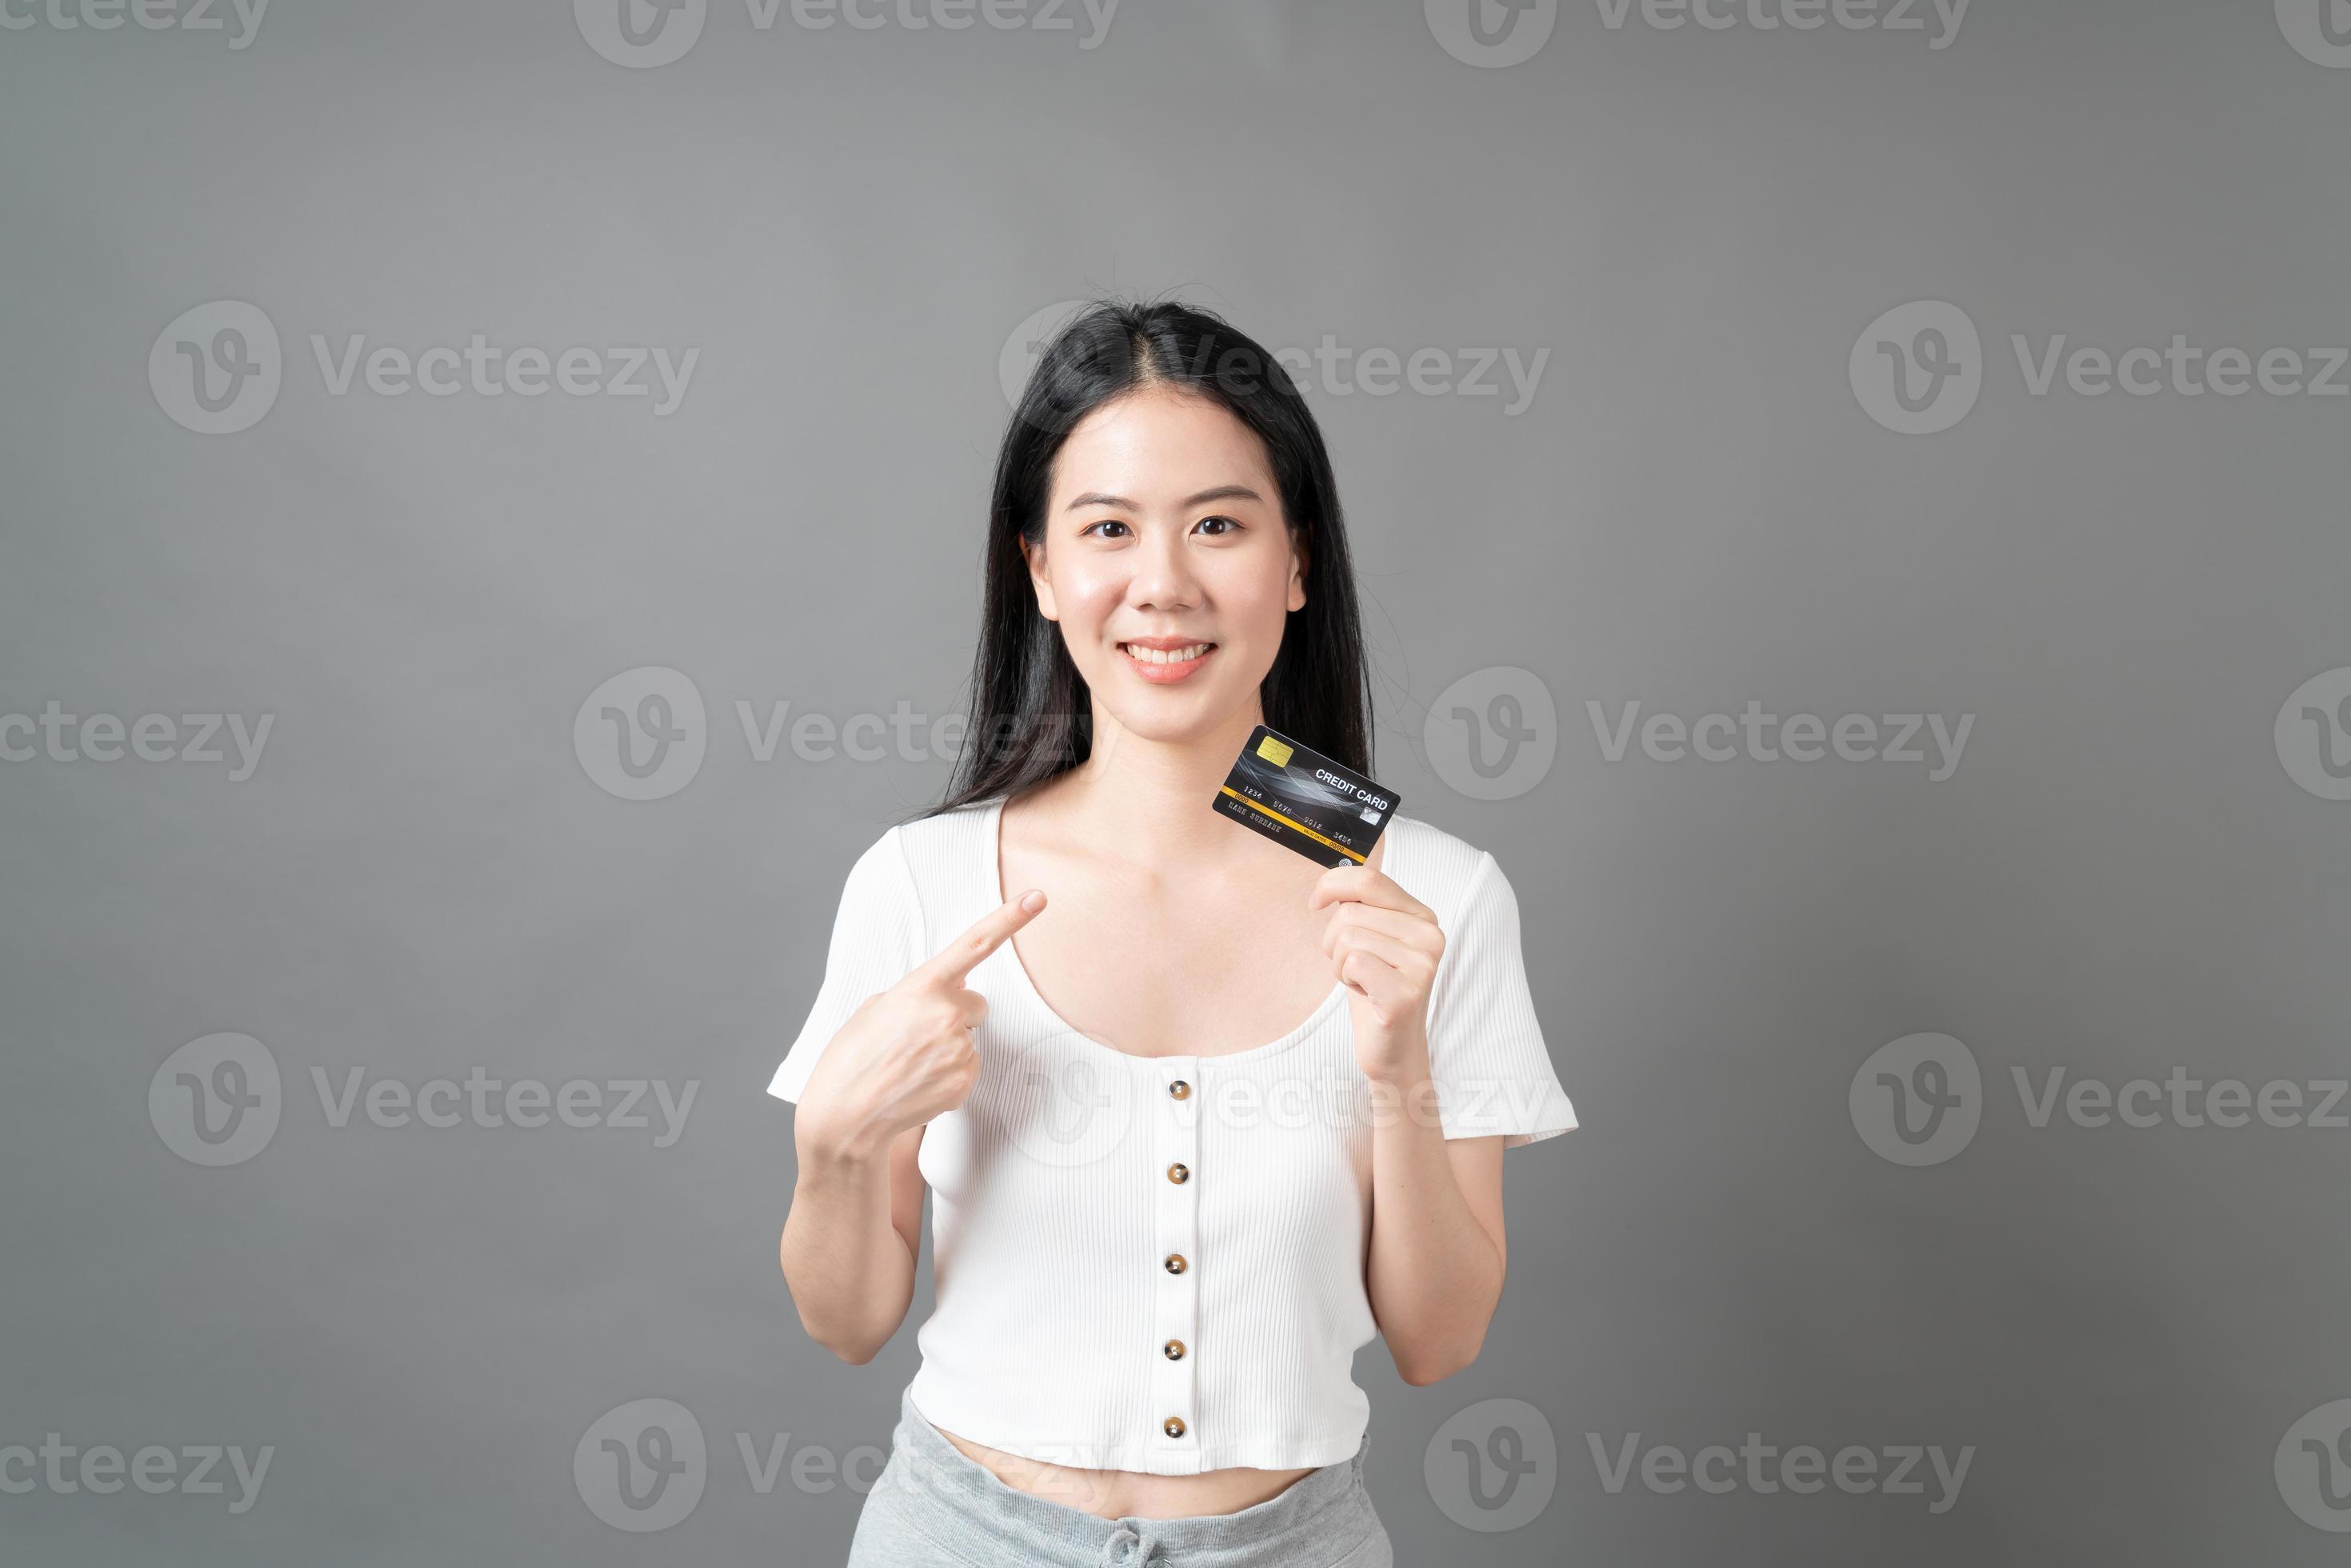 femme asiatique avec un visage heureux et présentant une carte de crédit en main montrant la confiance pour effectuer le paiement photo